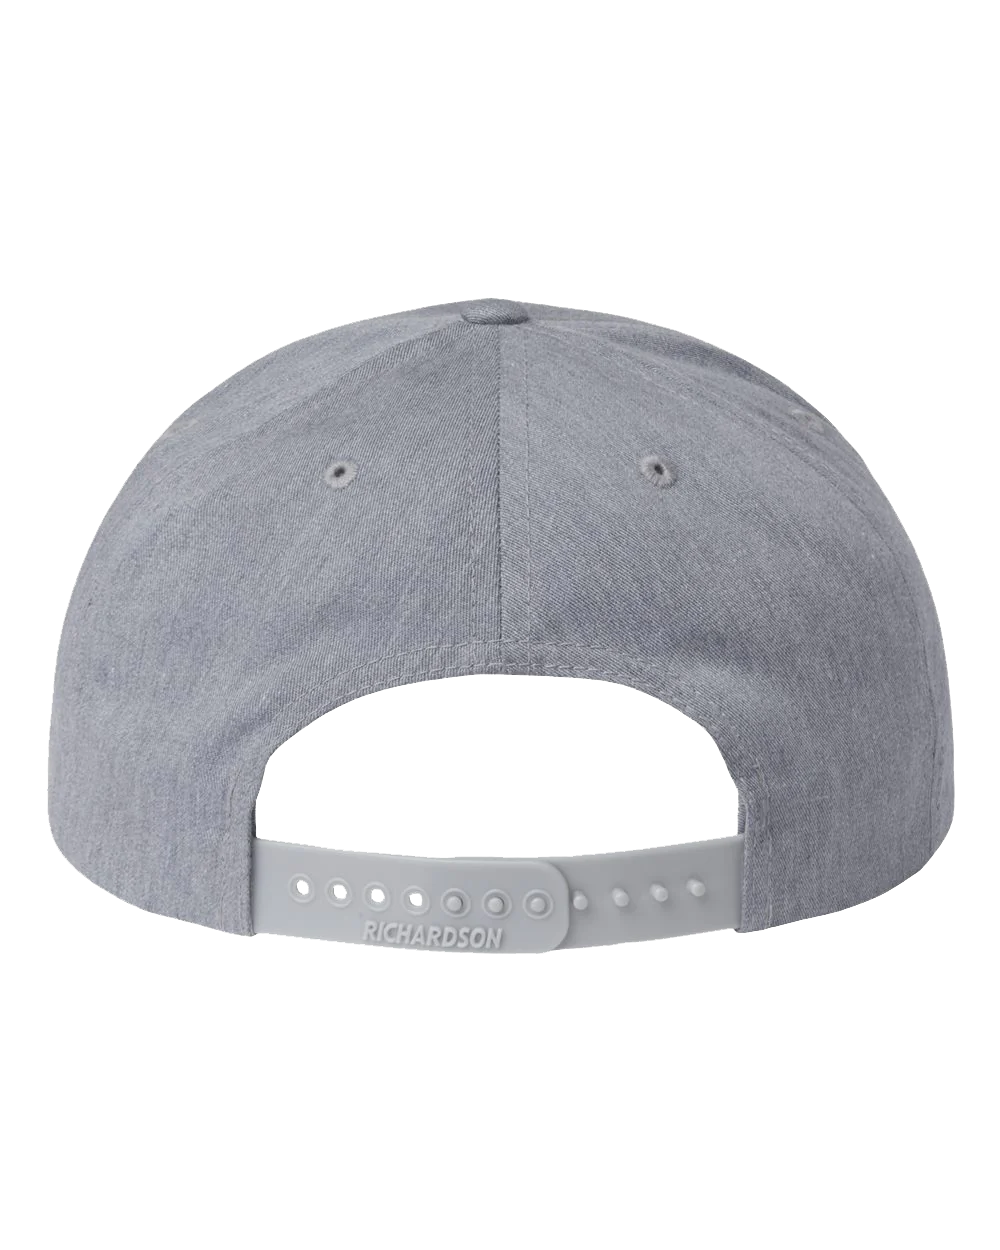 Duelers Grey Snapback Hat